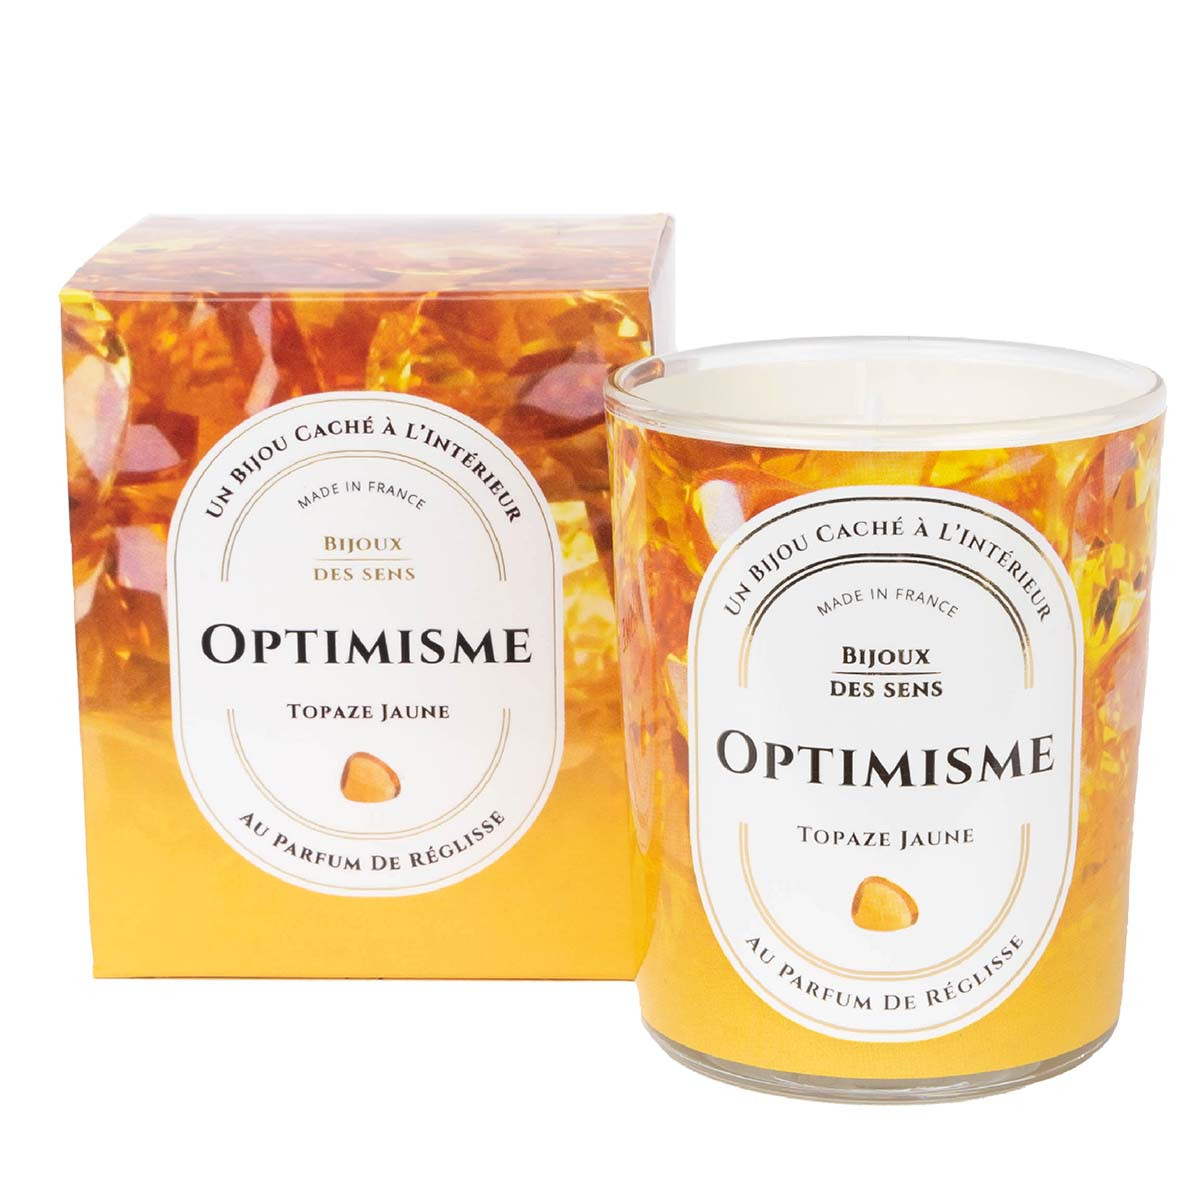 Optimisme - Bougie Fragrance Reglisse et Collier Doré Topaze Jaune